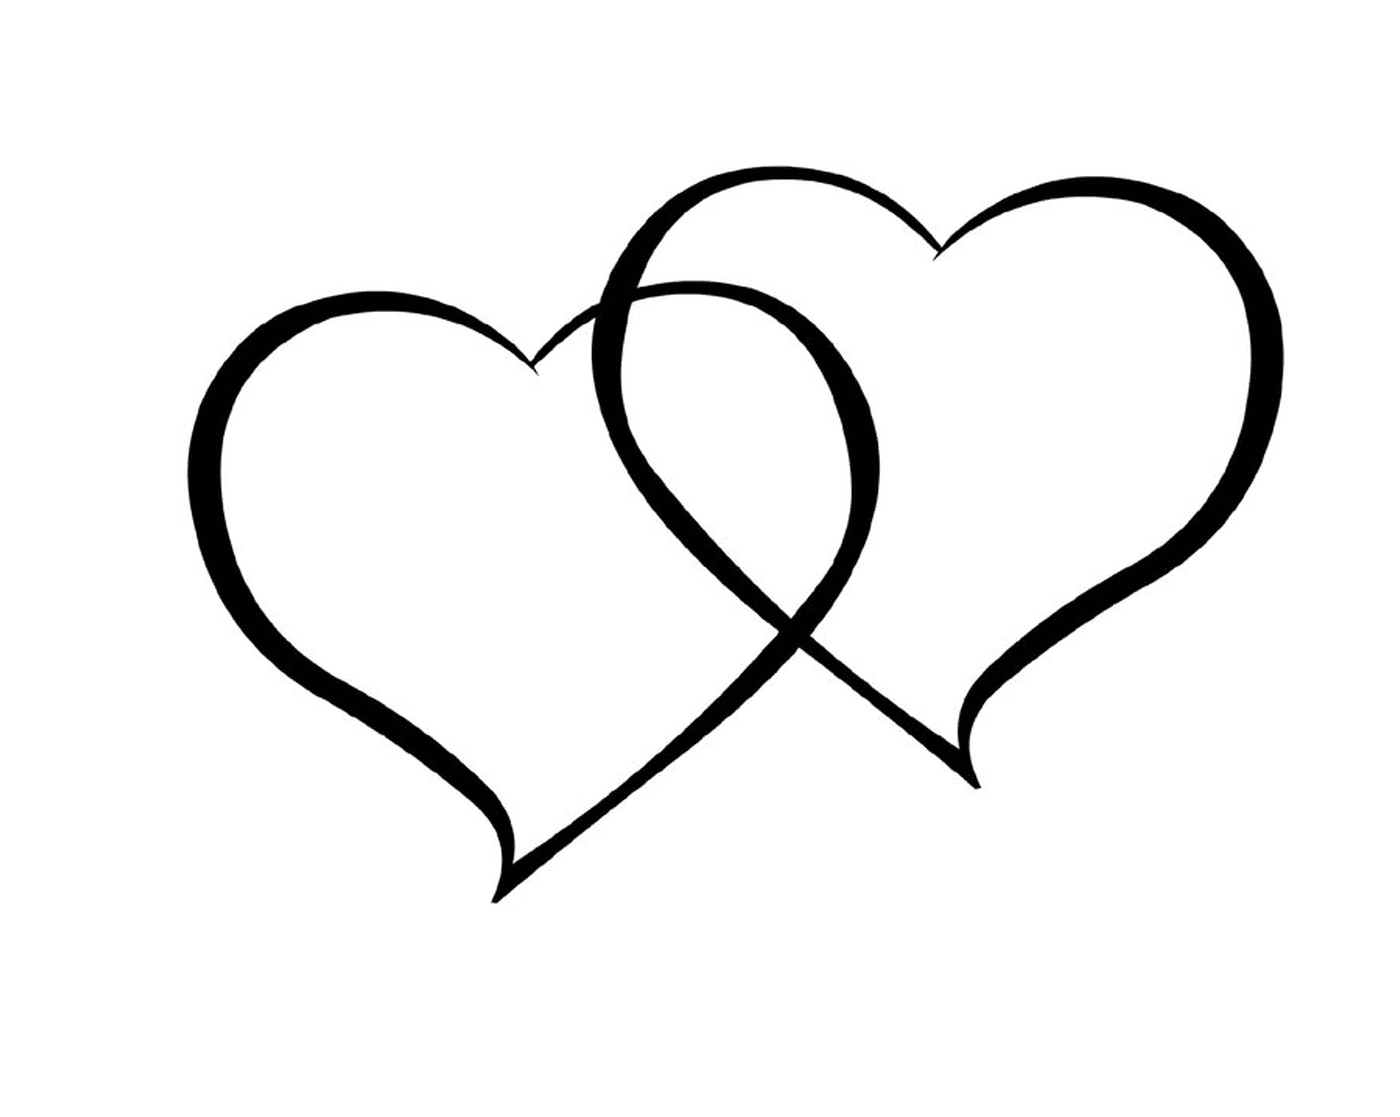  Dois corações desenhados em tinta preta sobre um fundo branco 